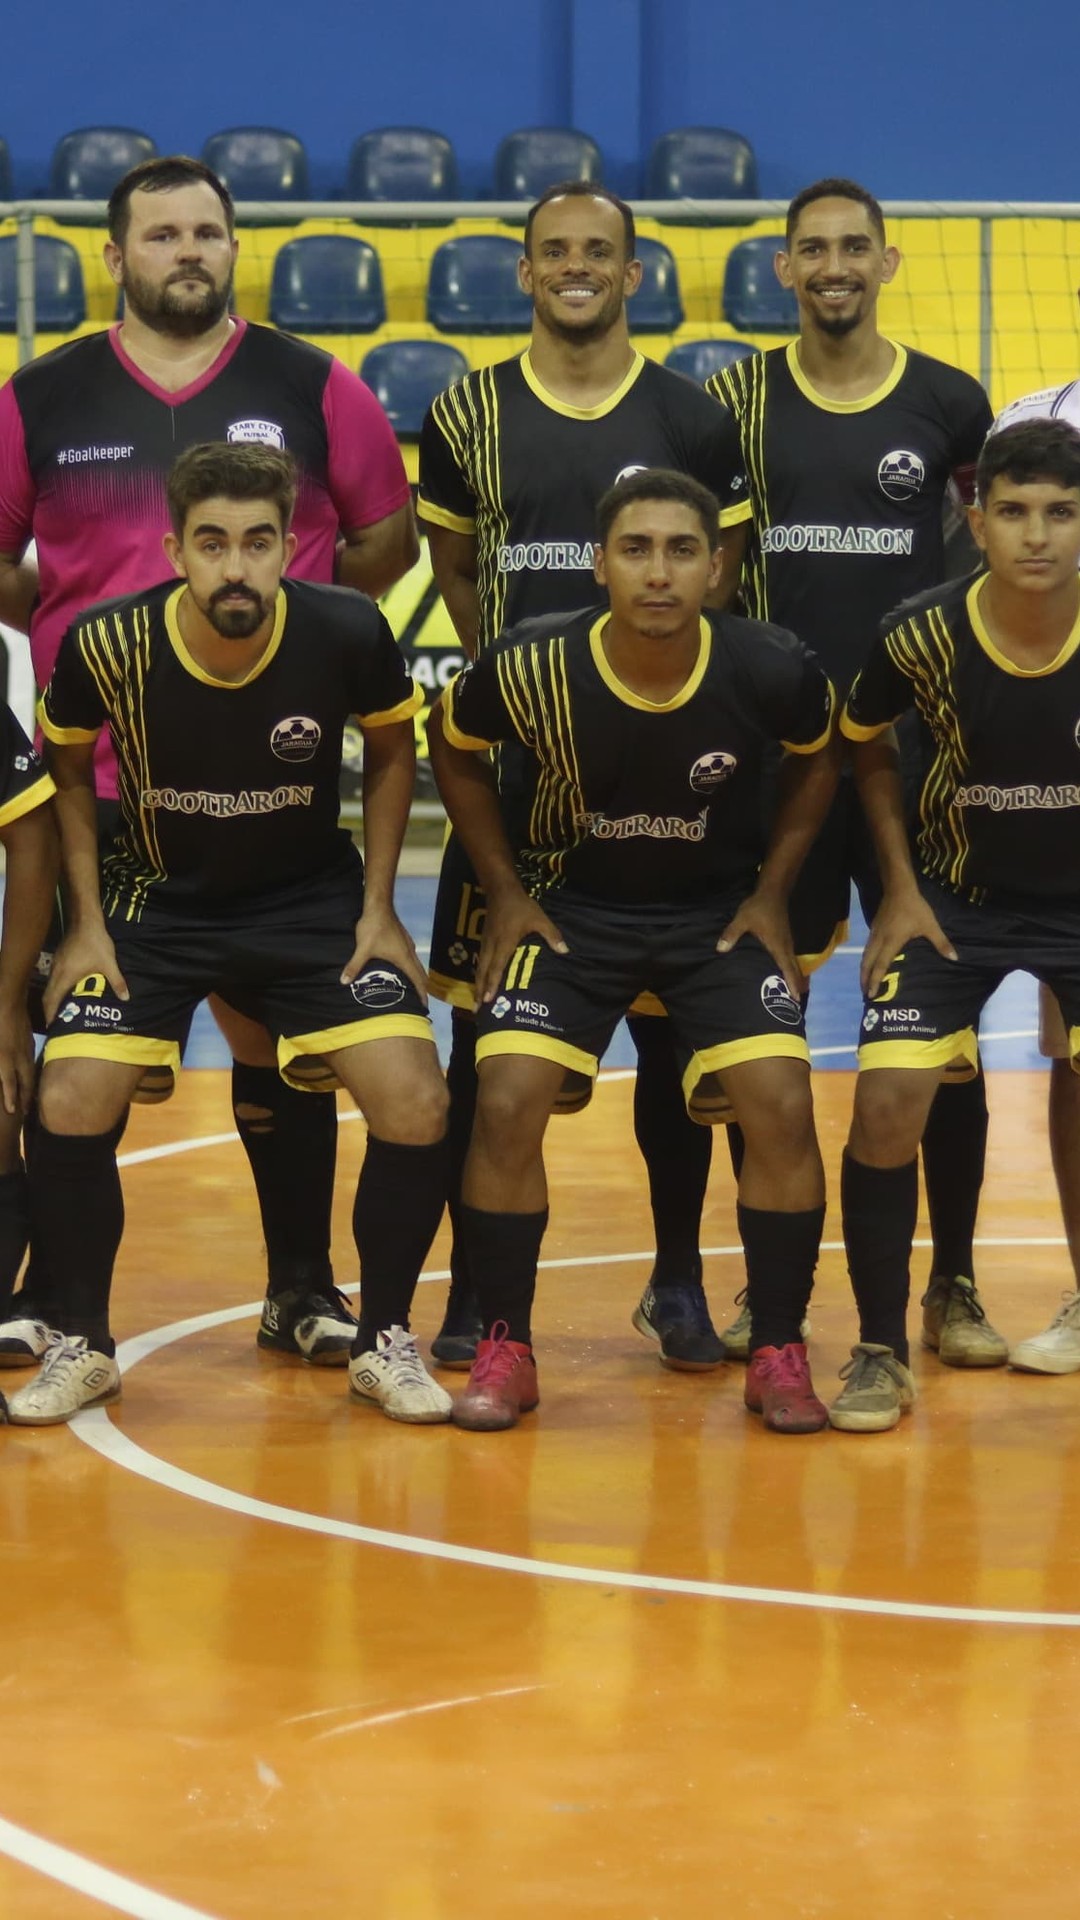 Educação - Time de Futsal da Escola Major Guapindaia inicia as disputas no  Campeonato Mundial Escolar na Sérvia, nesta terça-feira - Governo do Estado  de Rondônia - Governo do Estado de Rondônia